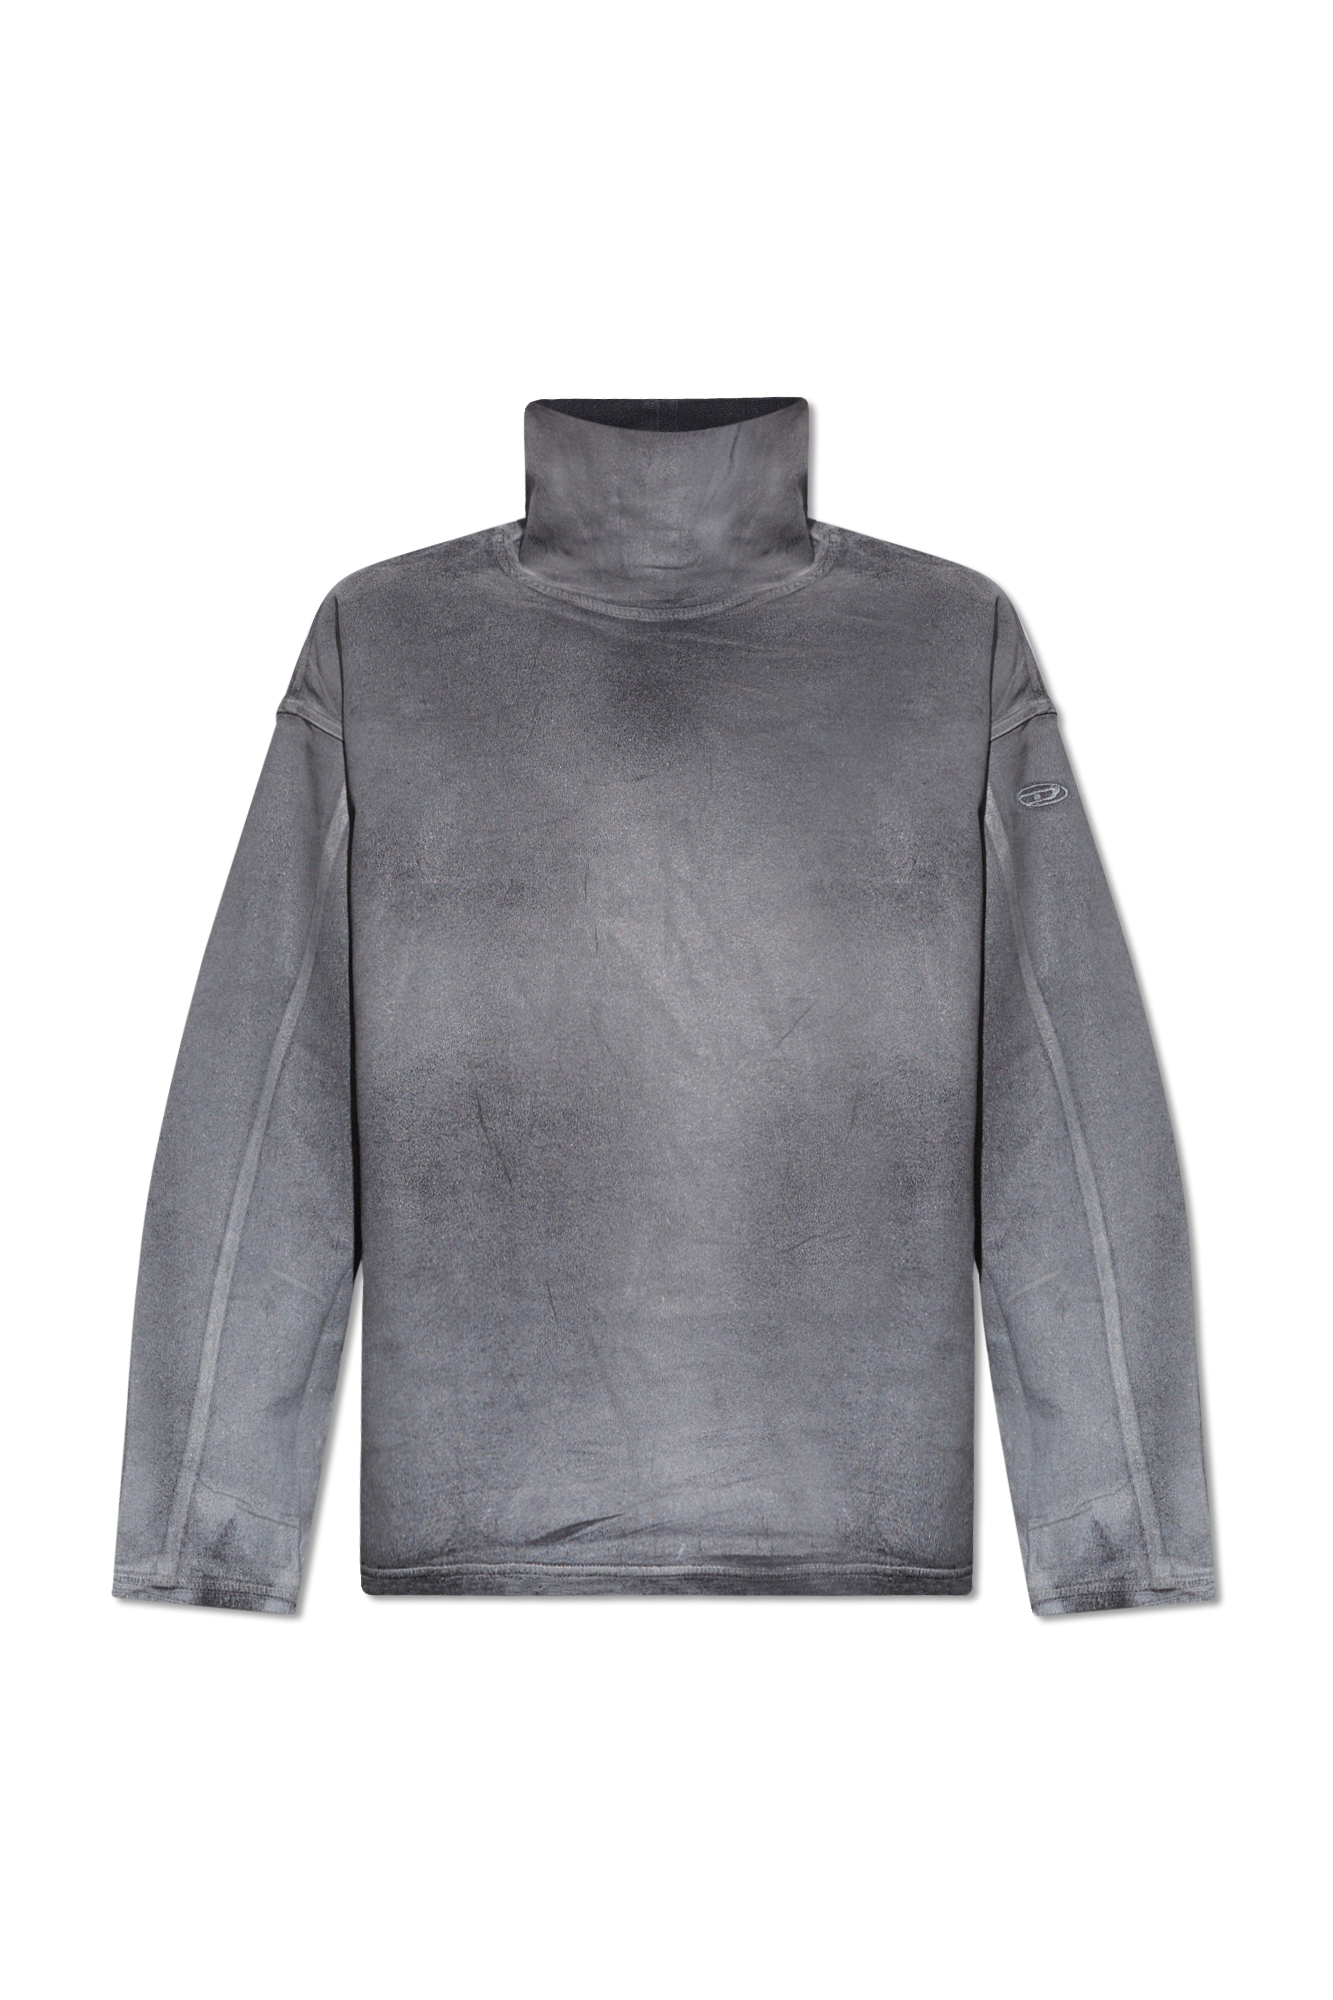 Diesel ‘D-NLABELCOL-S’ reflective sweatshirt